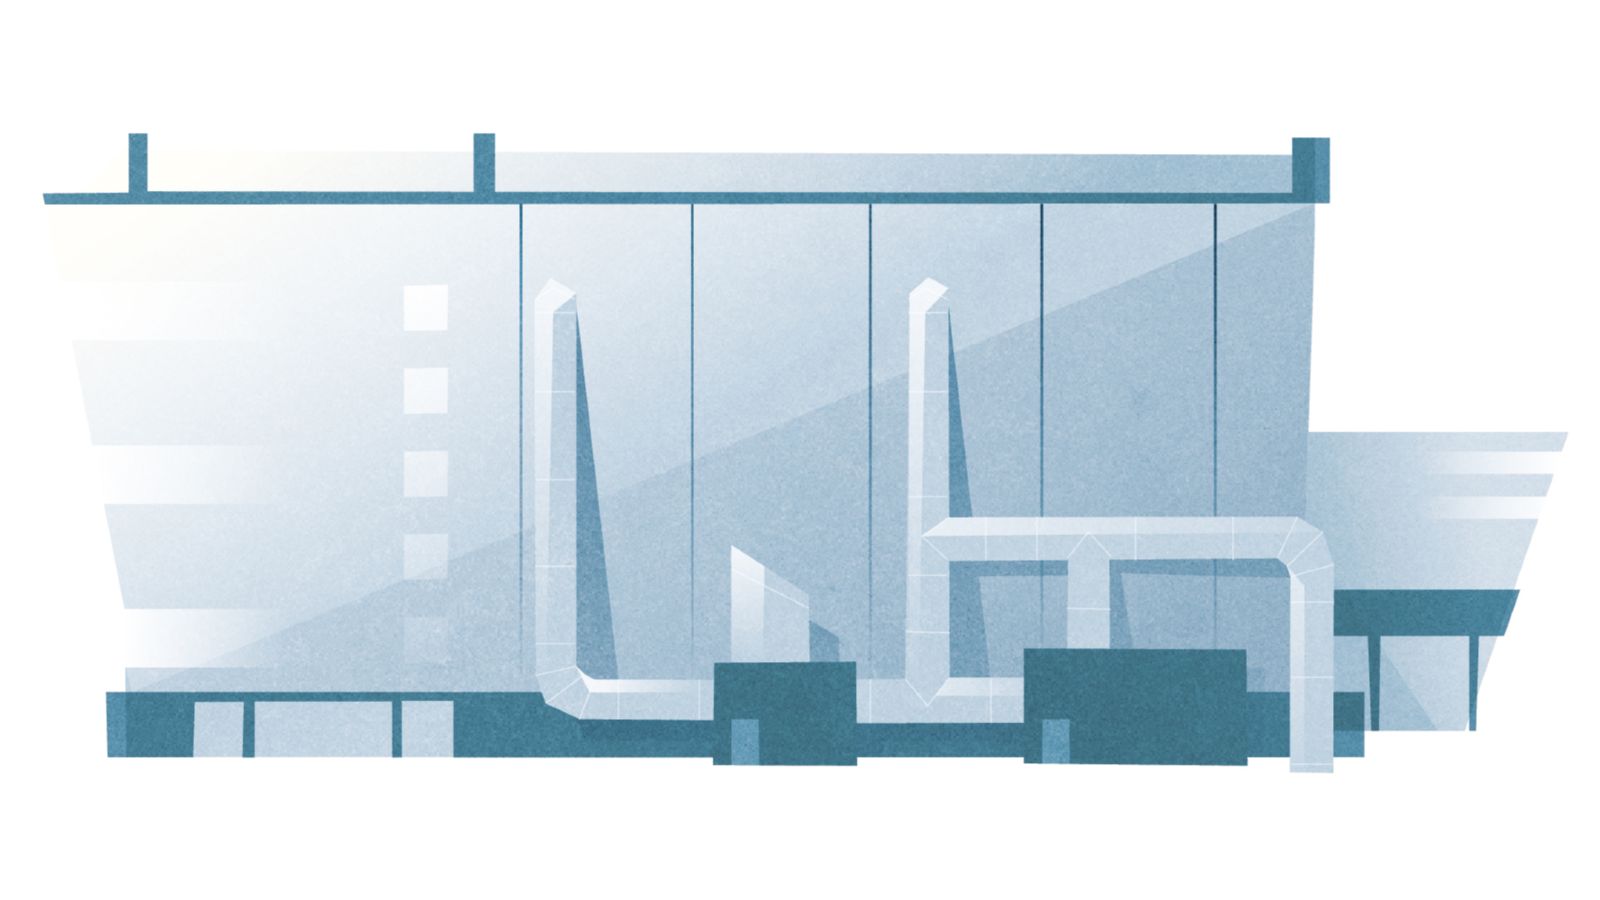 Das Bild zeigt eine Fabrik mit hervorgehobenen Heiz- und Kühlanlagen. 